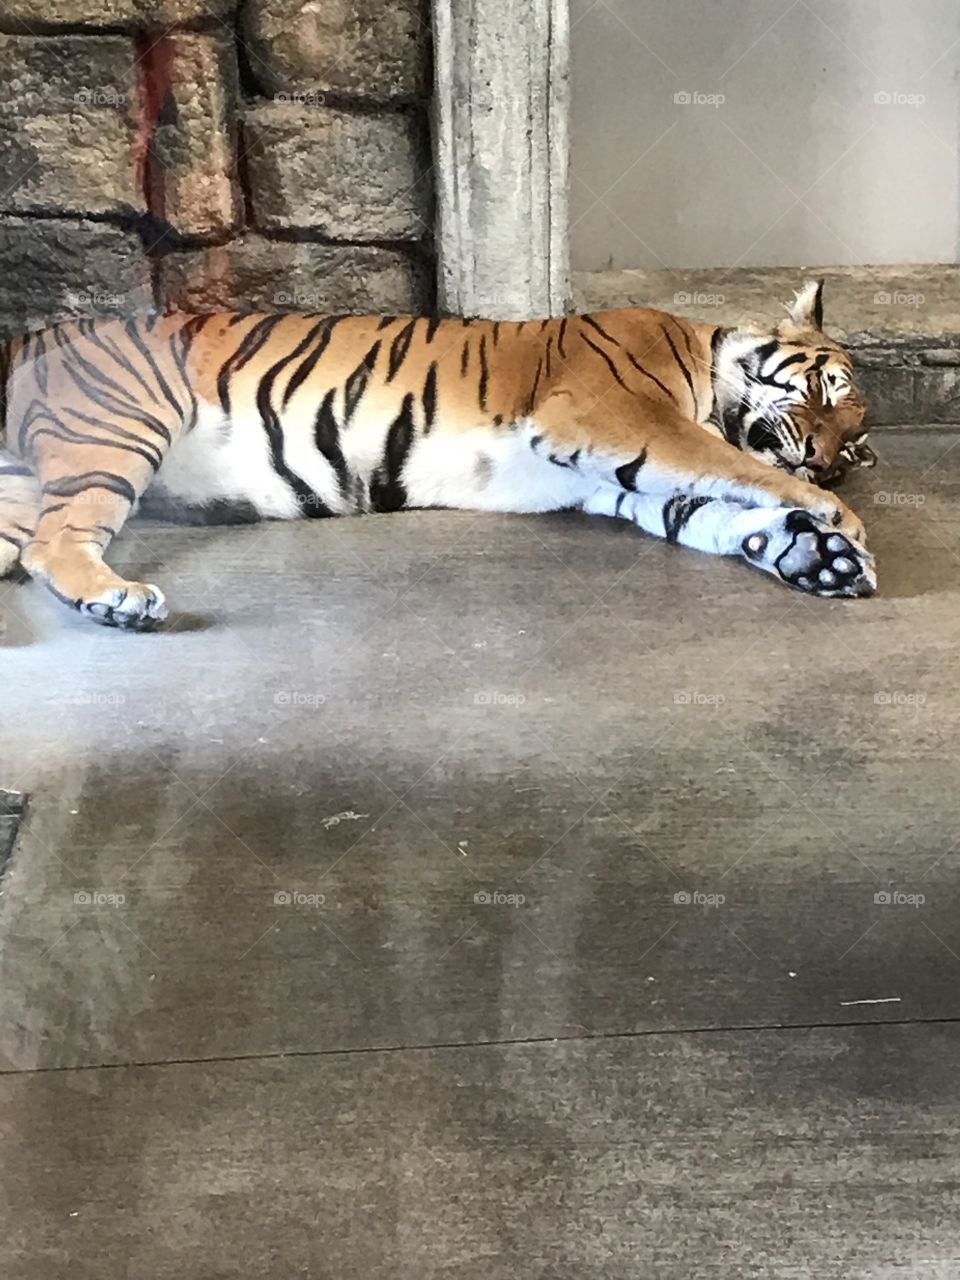 Tiger napping